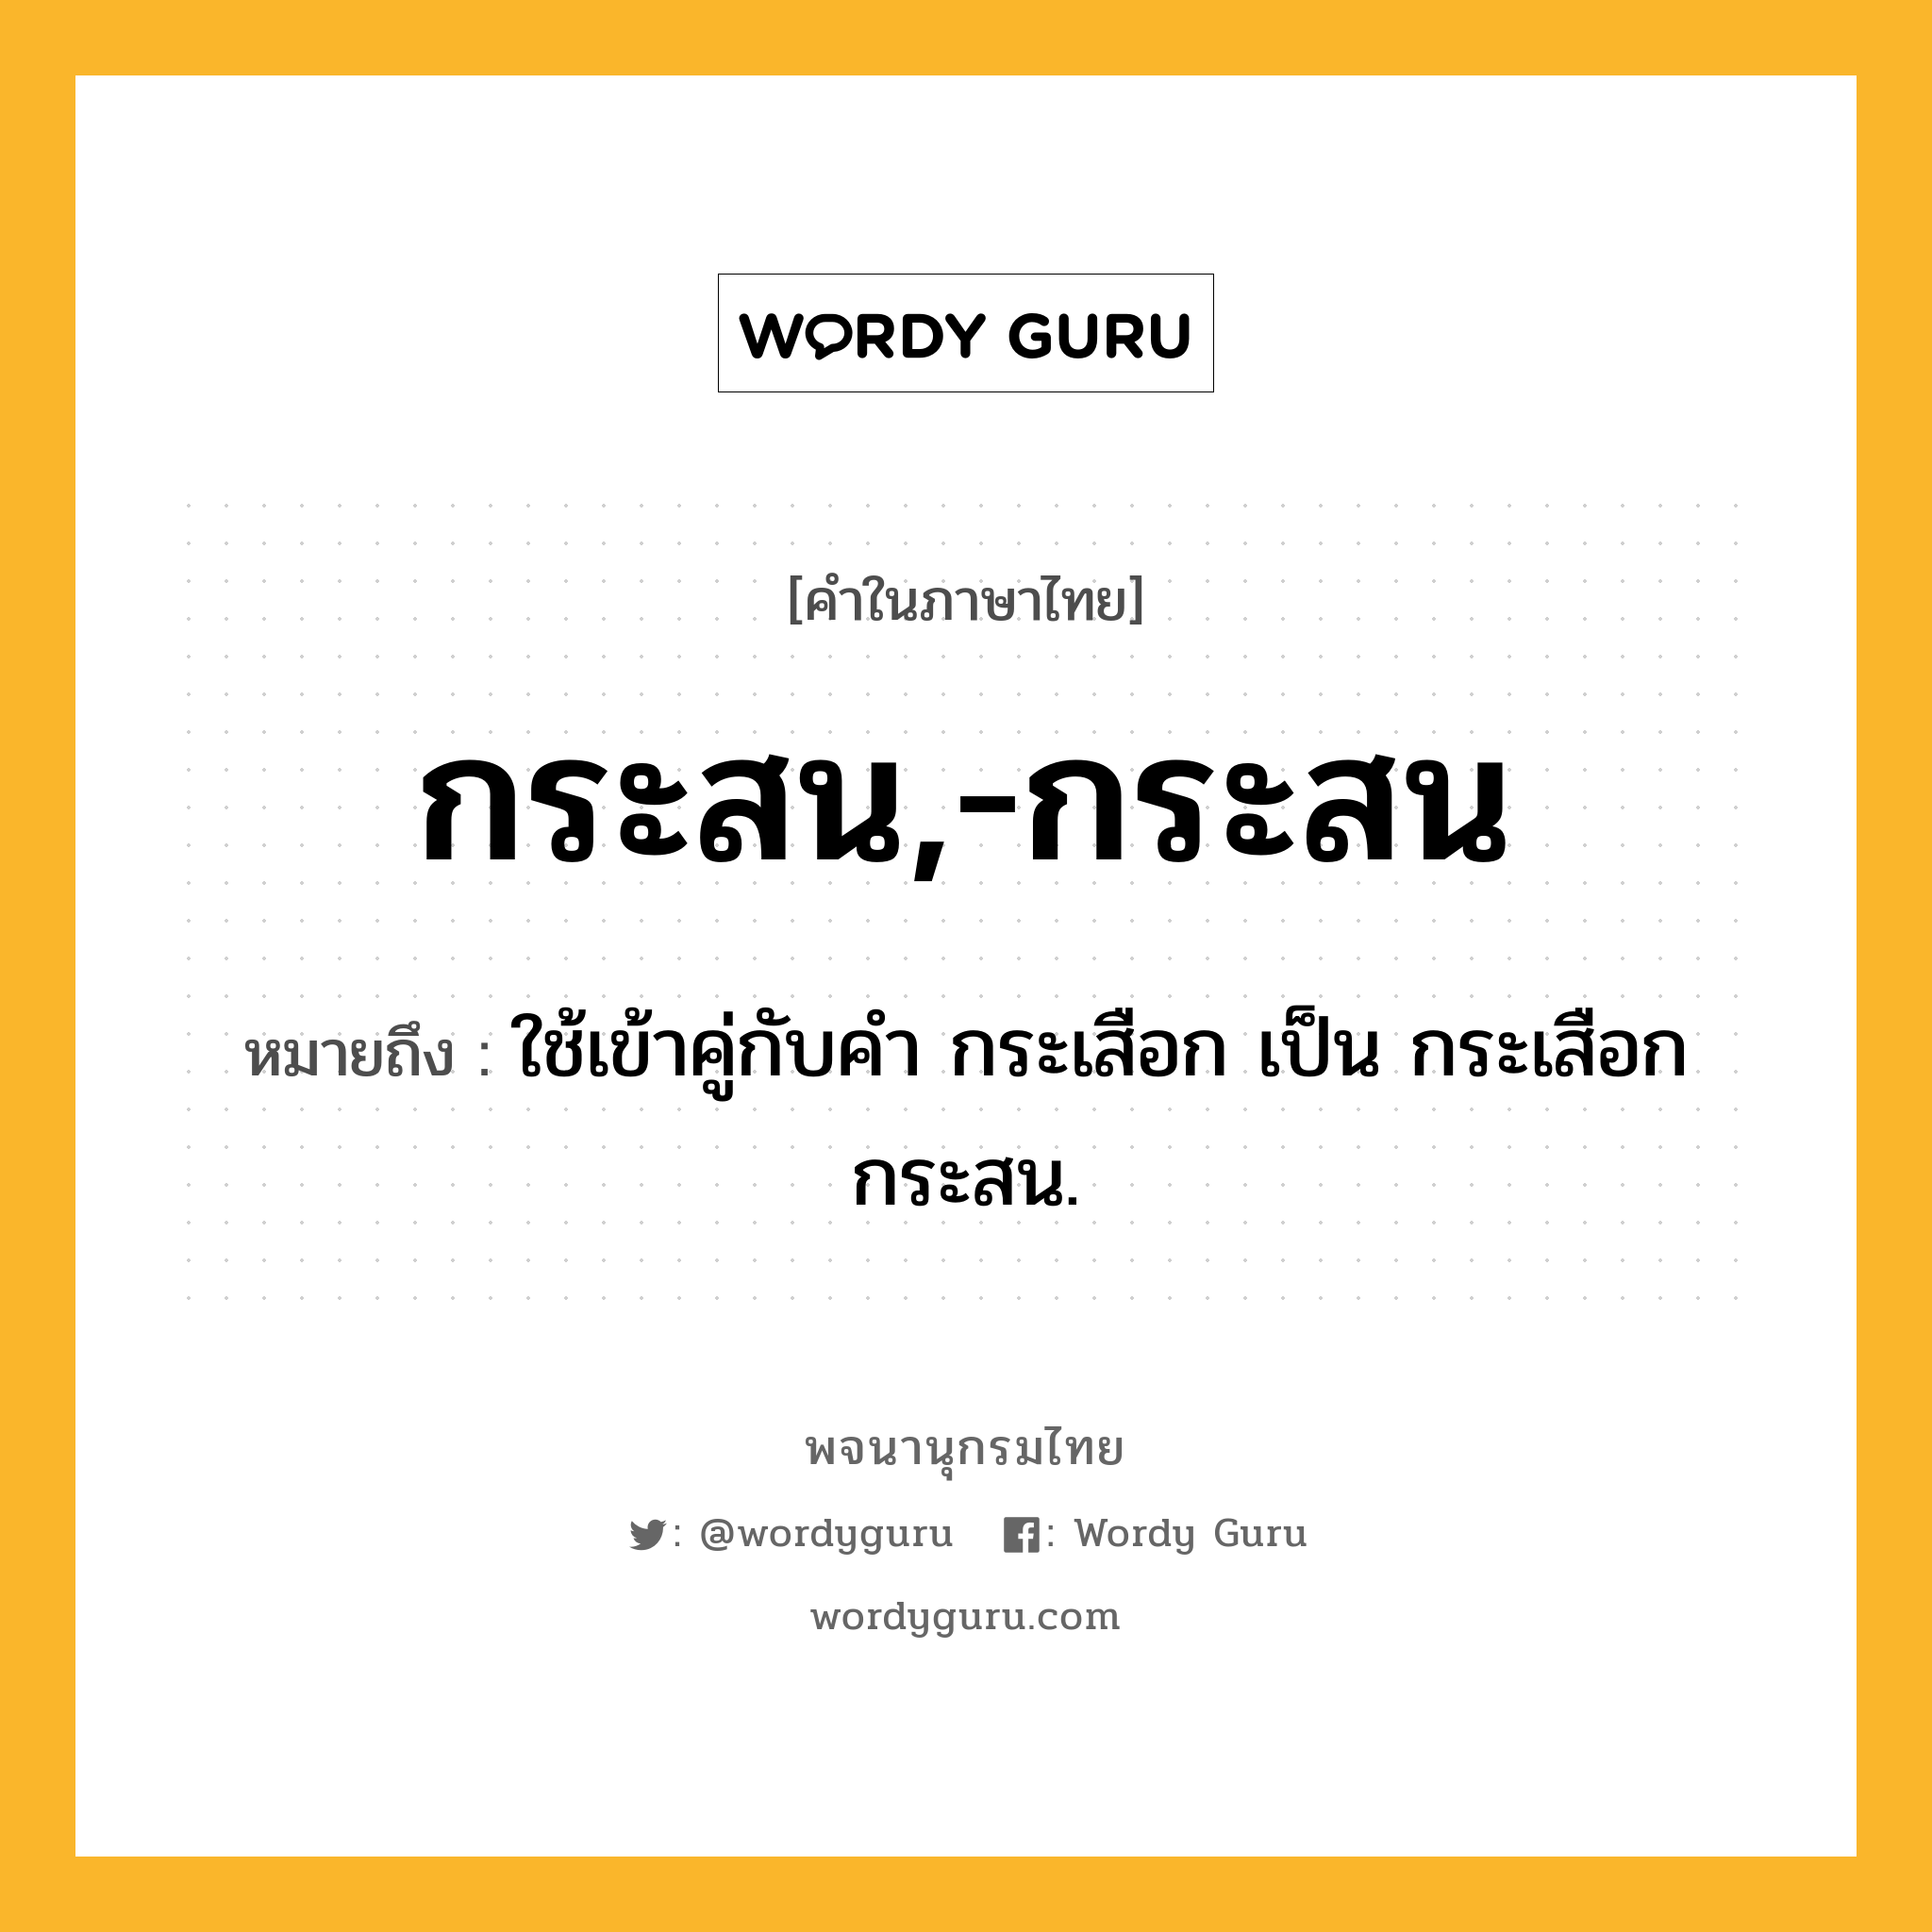 กระสน,-กระสน ความหมาย หมายถึงอะไร?, คำในภาษาไทย กระสน,-กระสน หมายถึง ใช้เข้าคู่กับคํา กระเสือก เป็น กระเสือกกระสน.